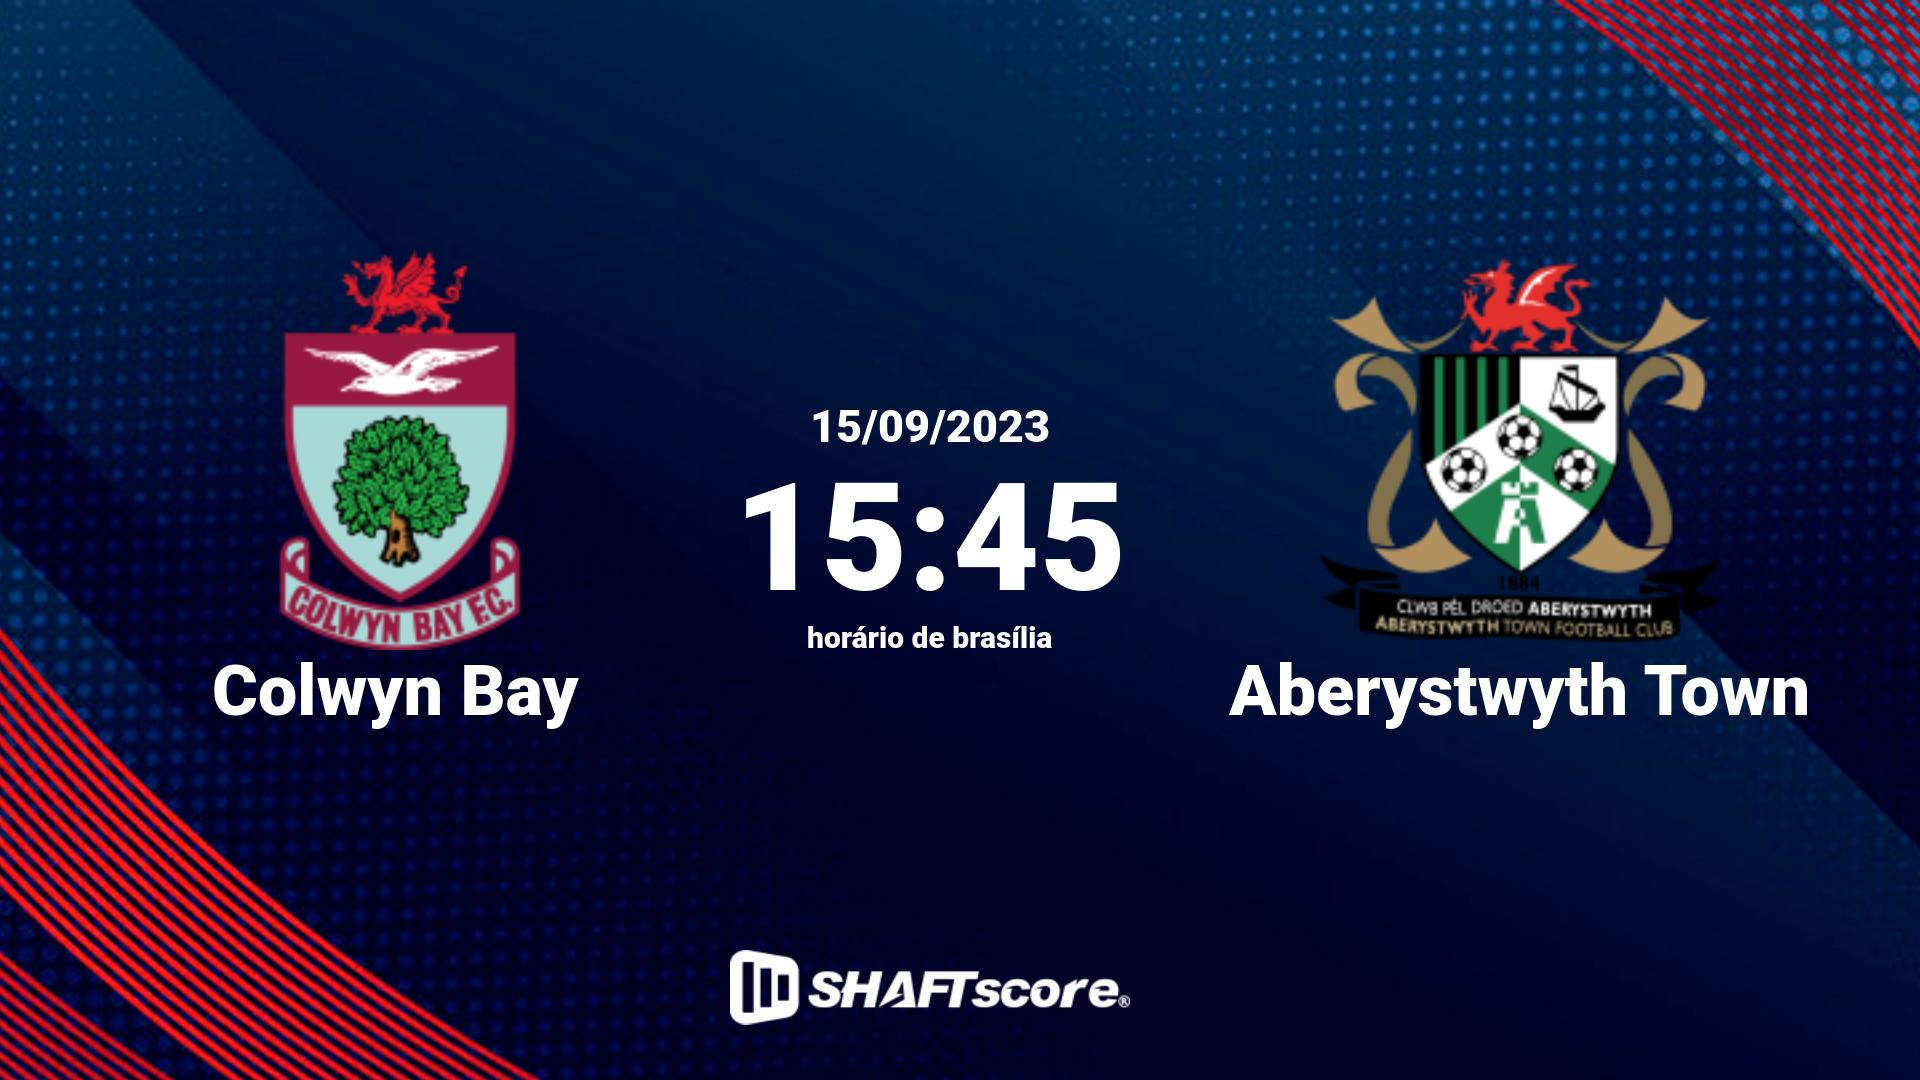 Estatísticas do jogo Colwyn Bay vs Aberystwyth Town 15.09 15:45